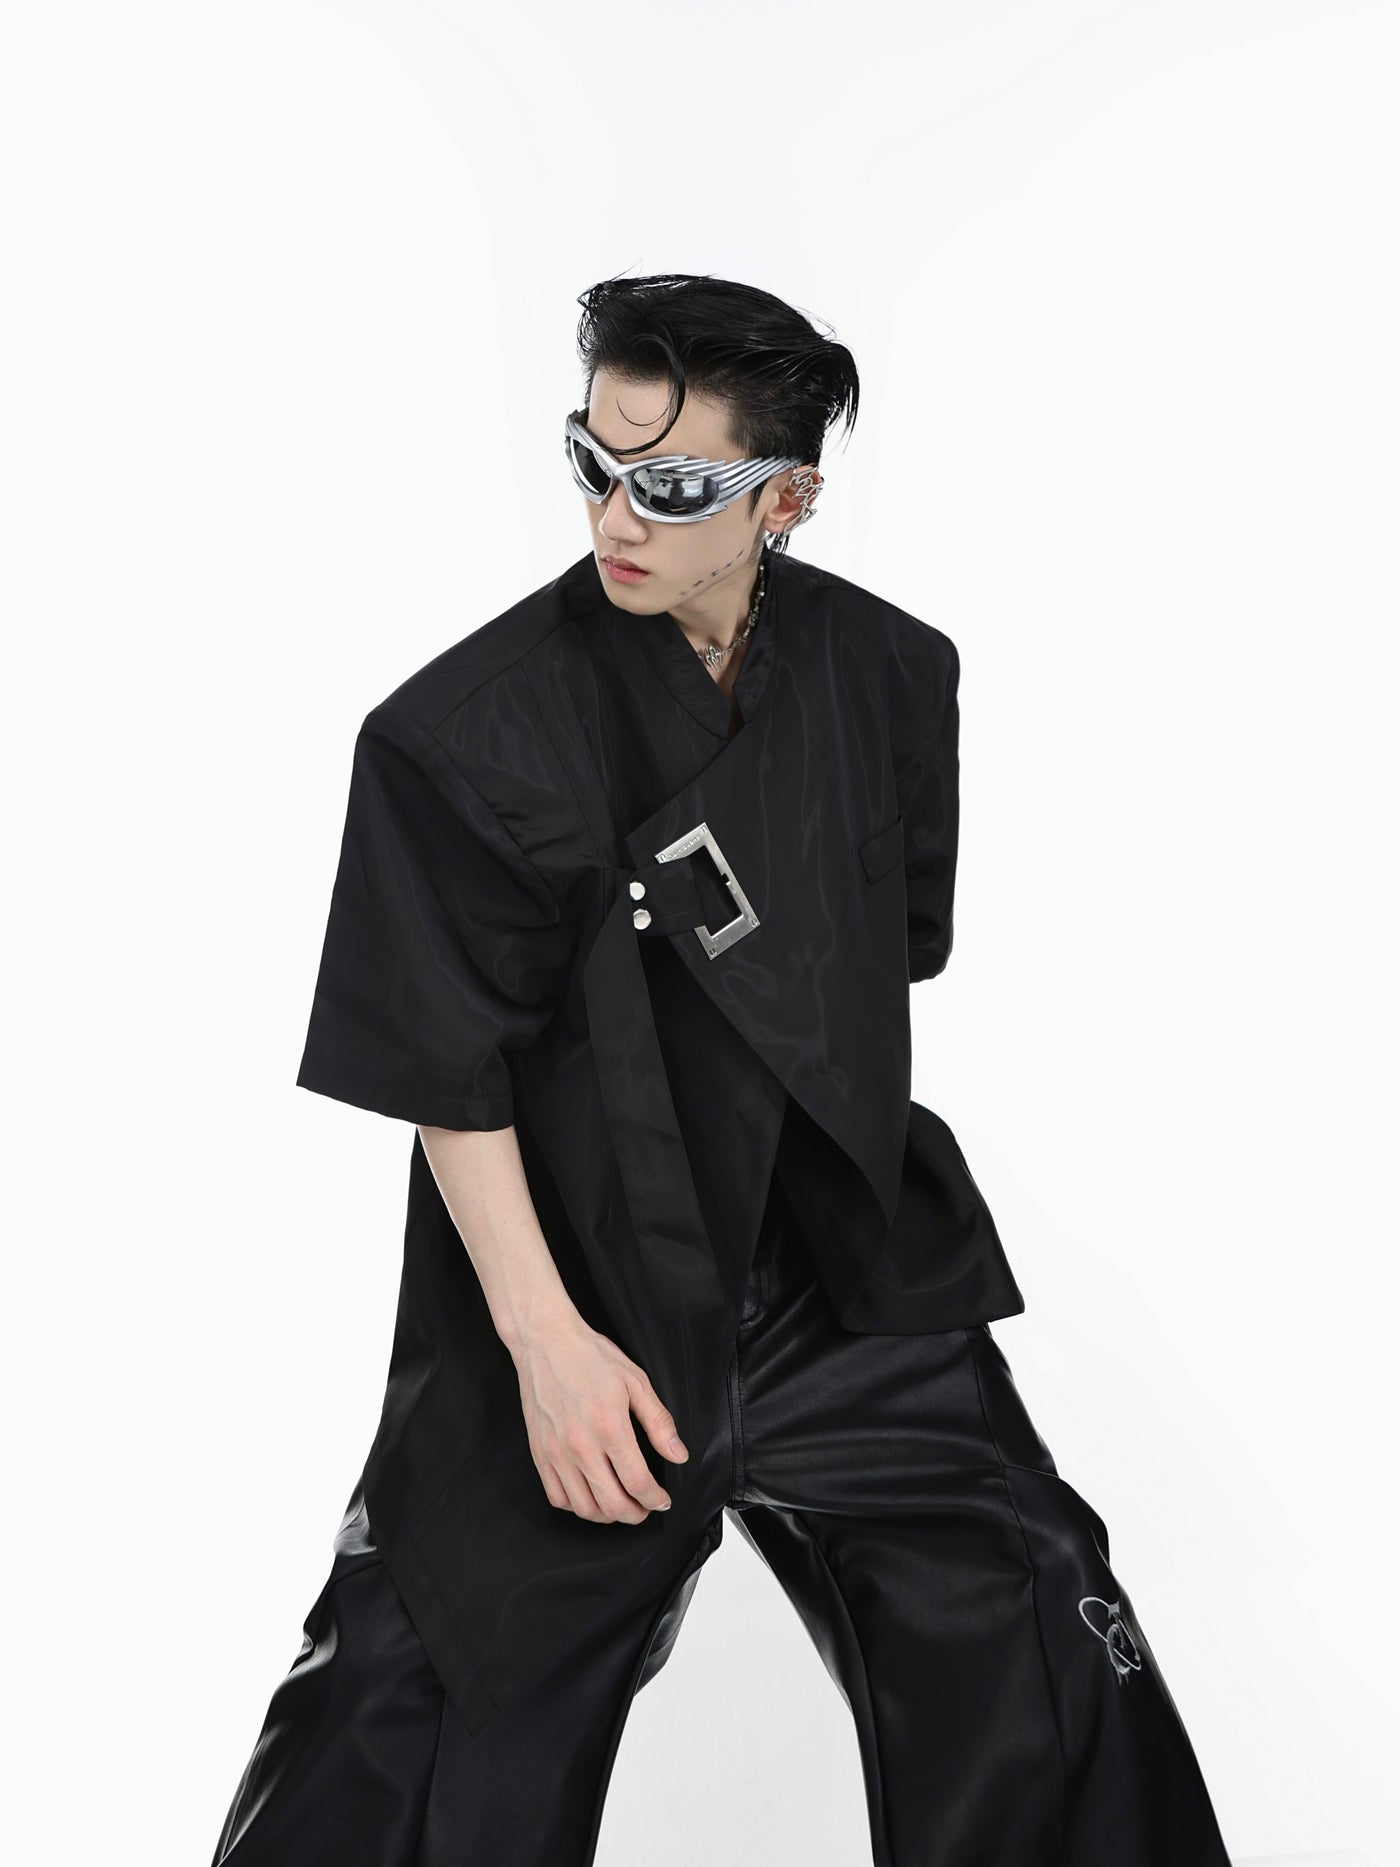 Argue Culture Rectangle Strap Lace Shirt Korean Street Fashion Shirt By Argue Culture Shop Online at OH Vault